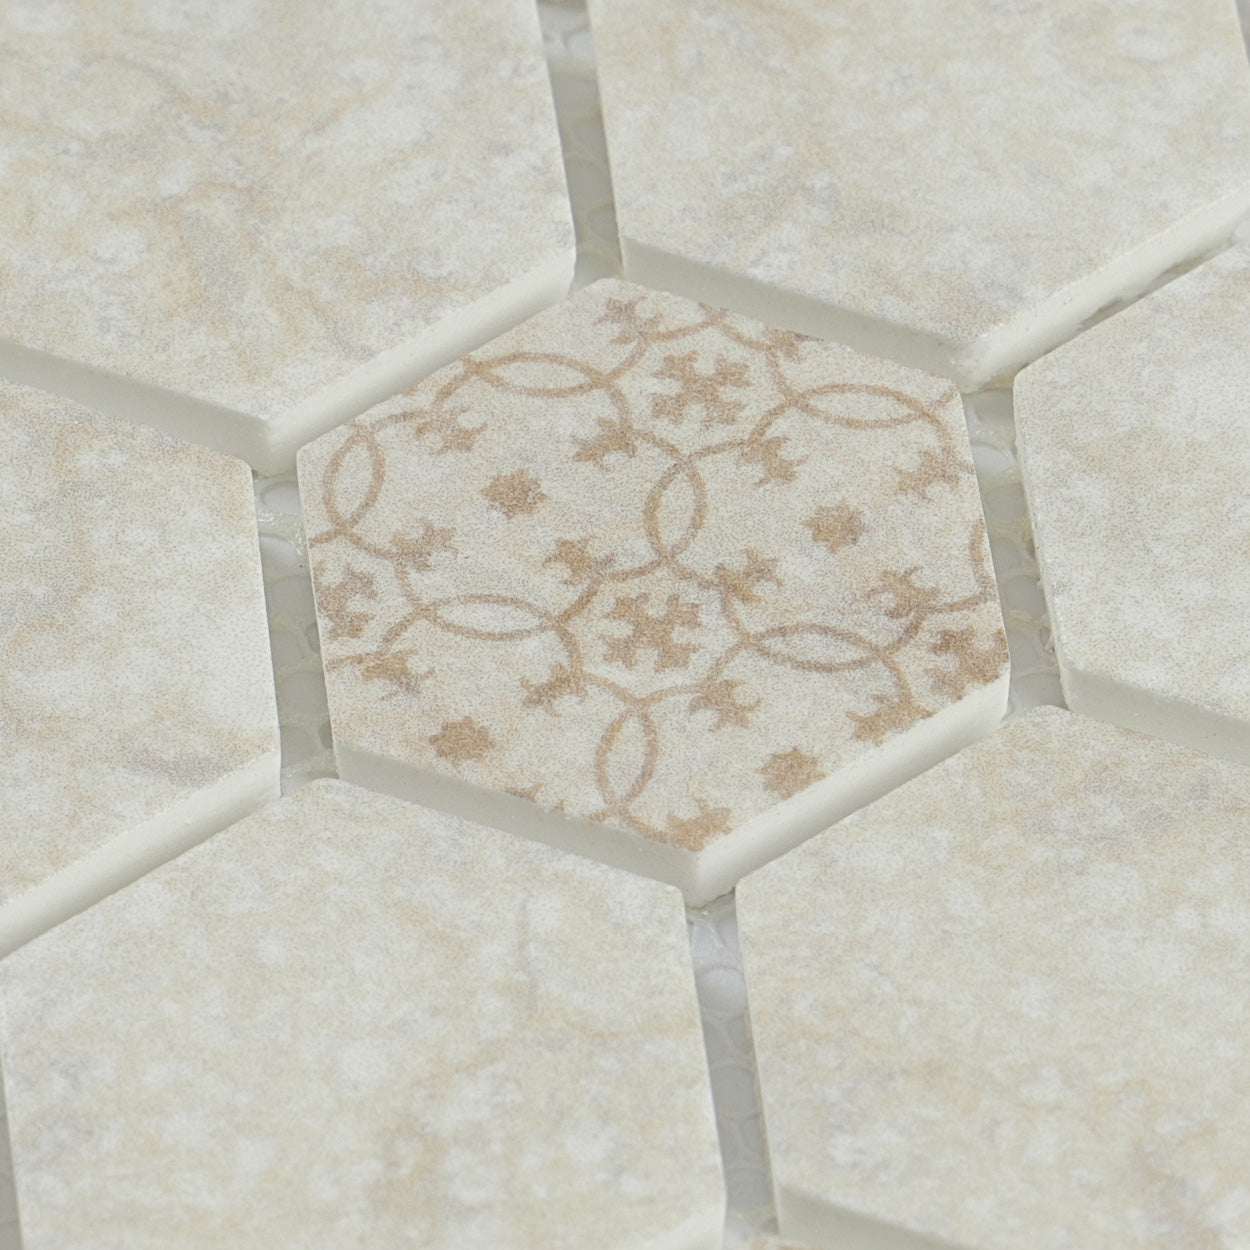 Lungarno Ceramics - Artisan Glass 1.5 in. Hexagon Mosaic - Travertine